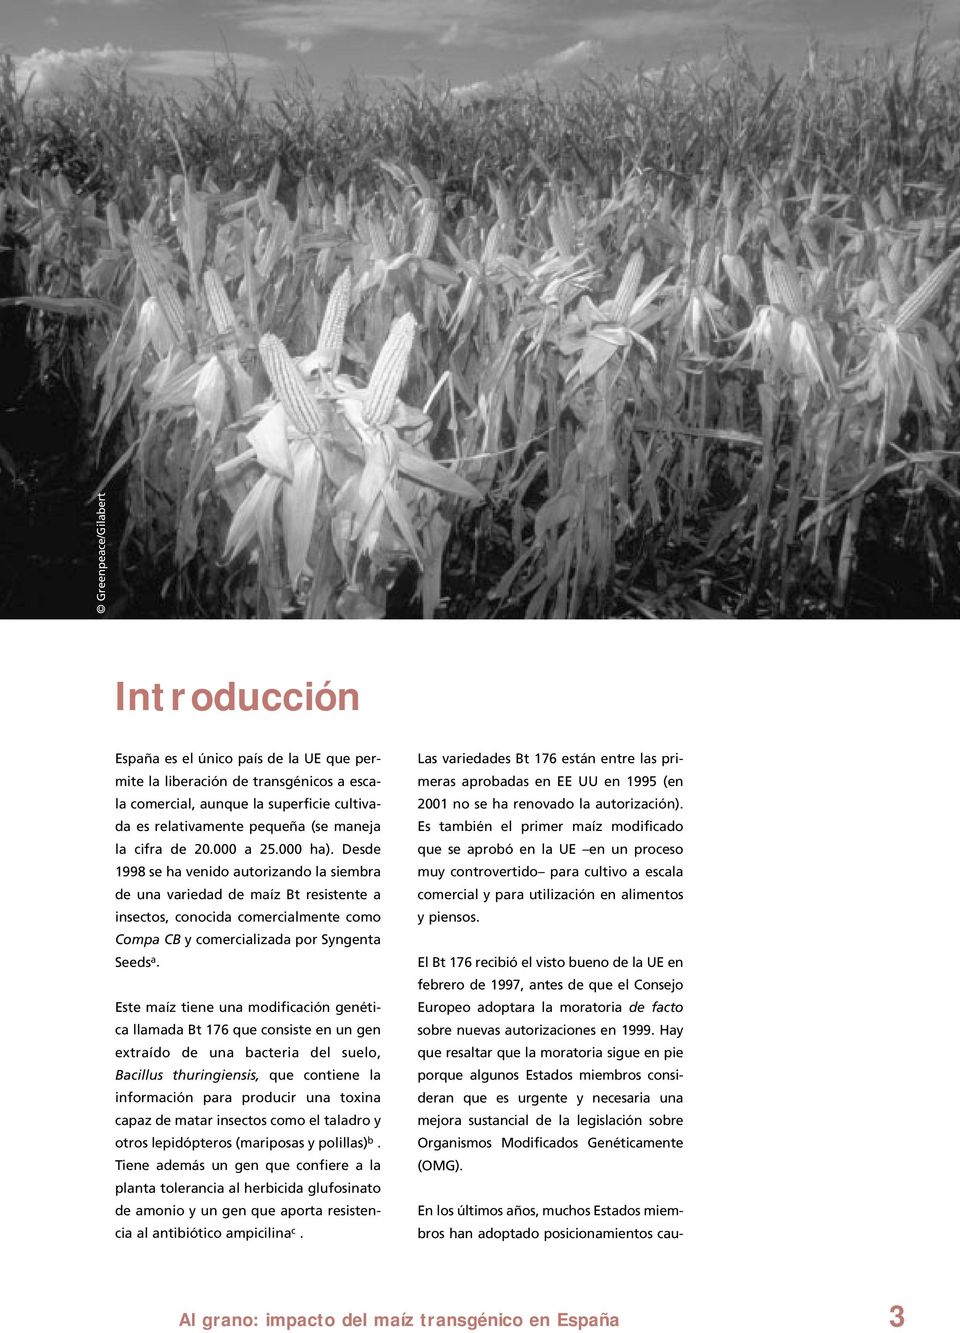 Desde 1998 se ha venido autorizando la siembra de una variedad de maíz Bt resistente a insectos, conocida comercialmente como Compa CB y comercializada por Syngenta Seeds a.